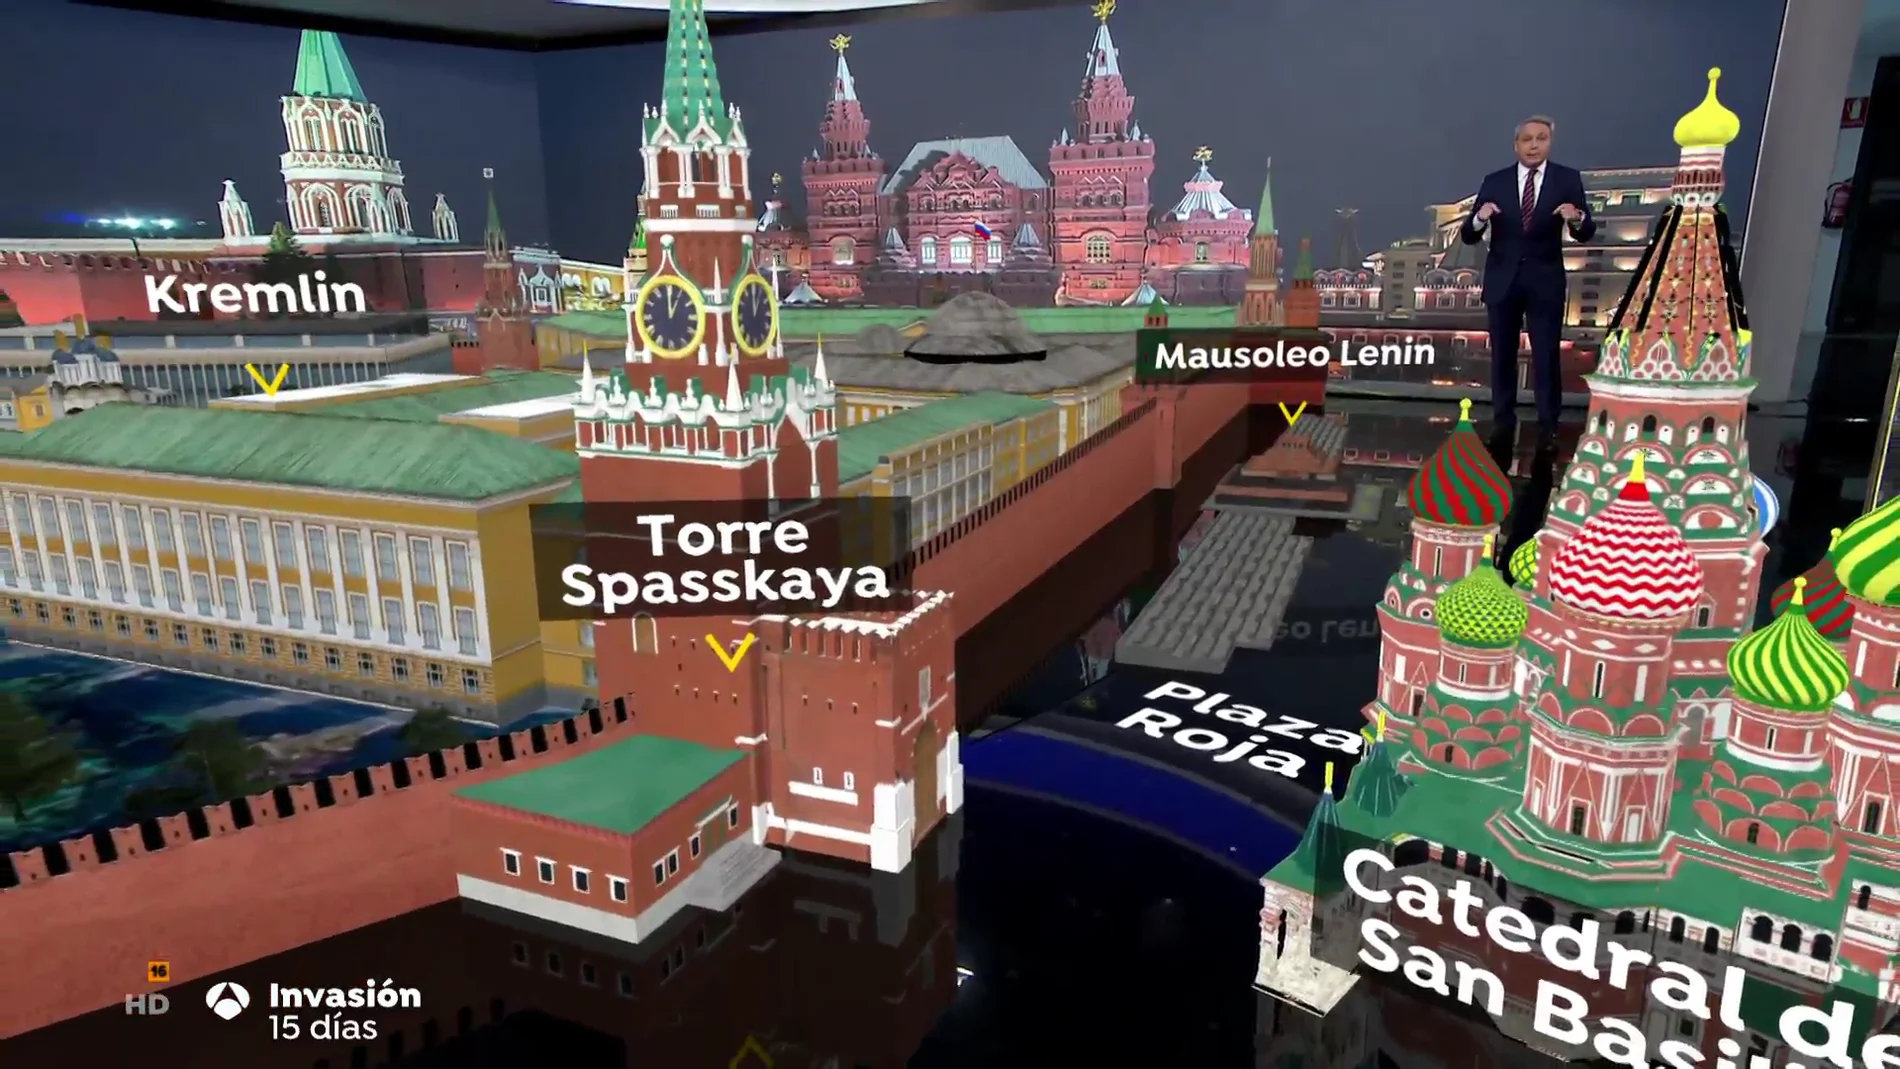 El informativo especial '15 días de invasión rusa' arranca con un plano en realidad aumentada de la Plaza Roja de Moscú